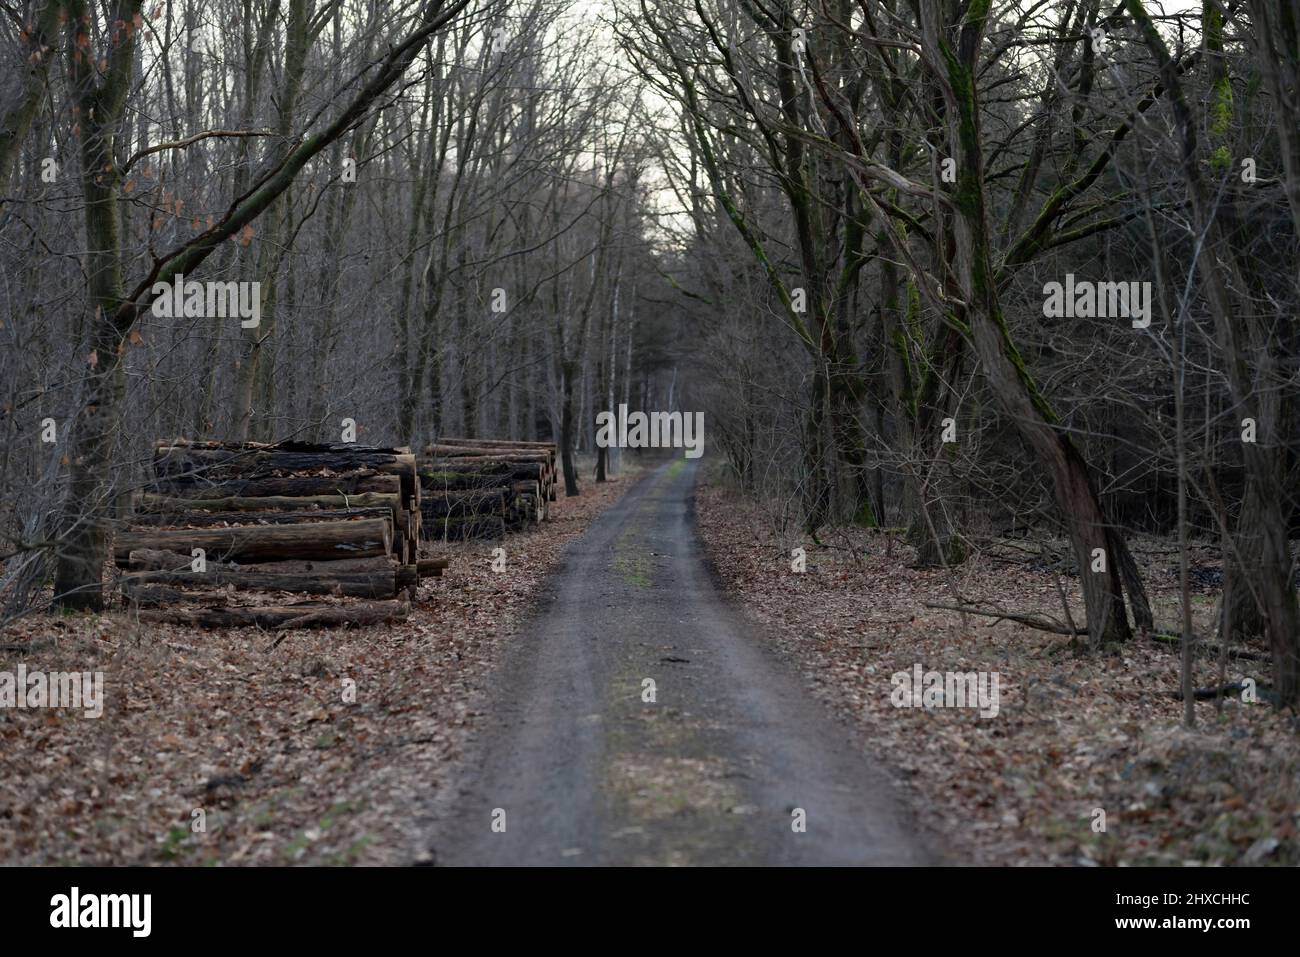 Strada forestale in una foresta in inverno, mucchi di legno lungo il percorso, profondità di campo poco profonda, bella bokeh morbido Foto Stock